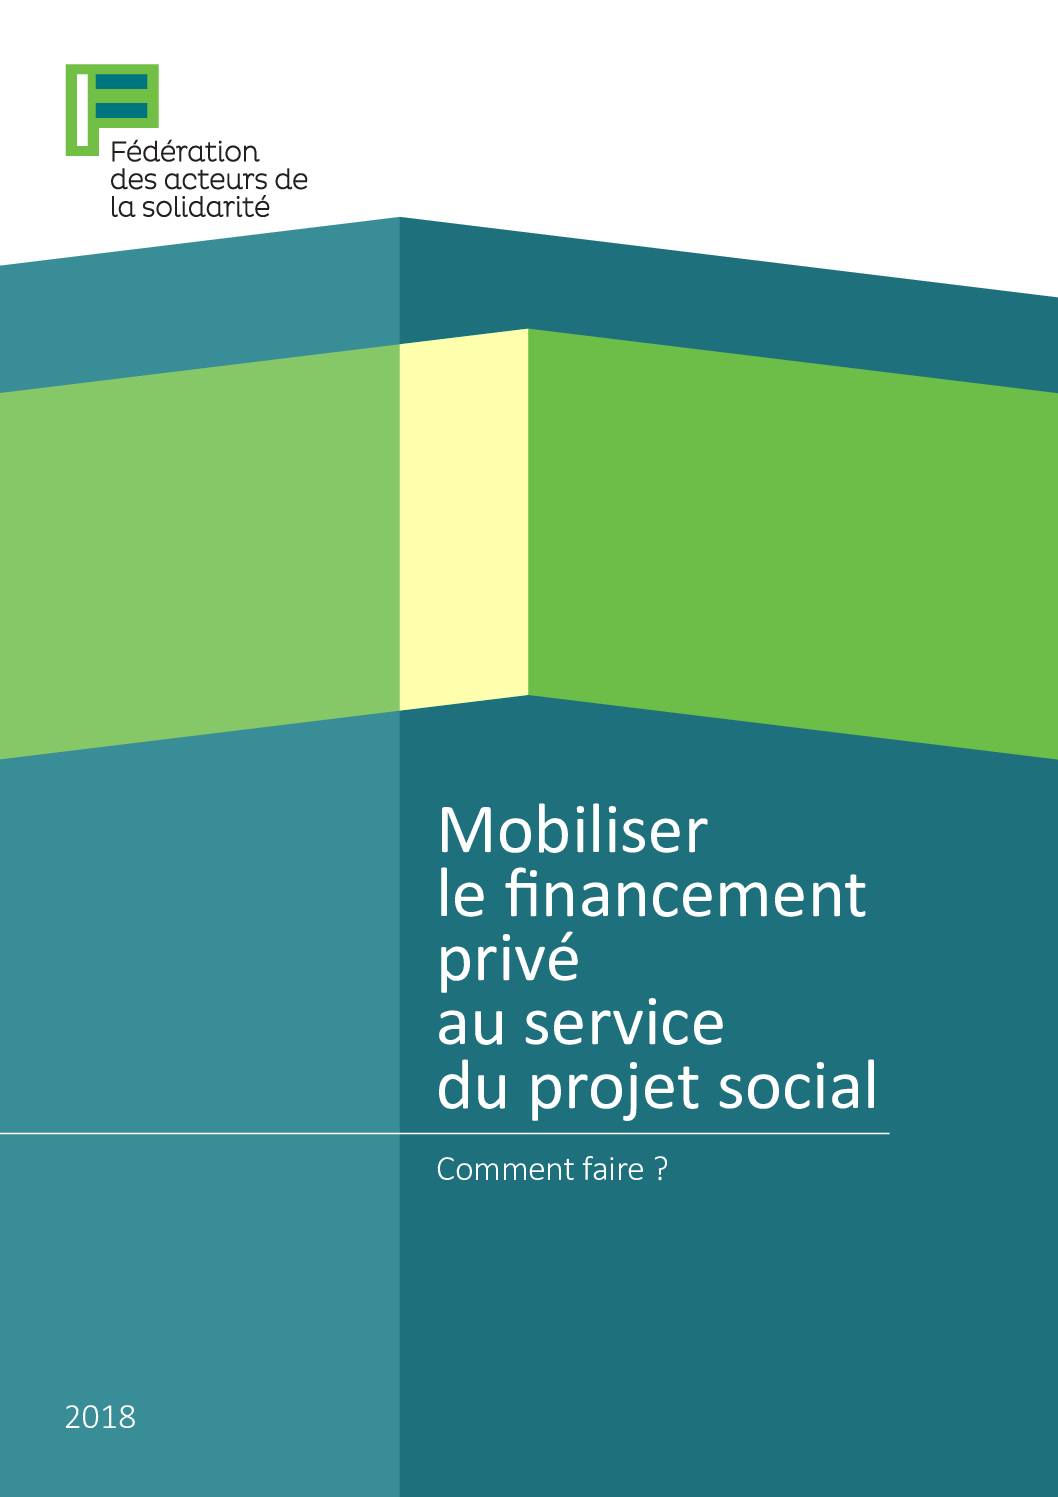 Mobiliser le financement privé au service du projet social - Comment (fiche 2)